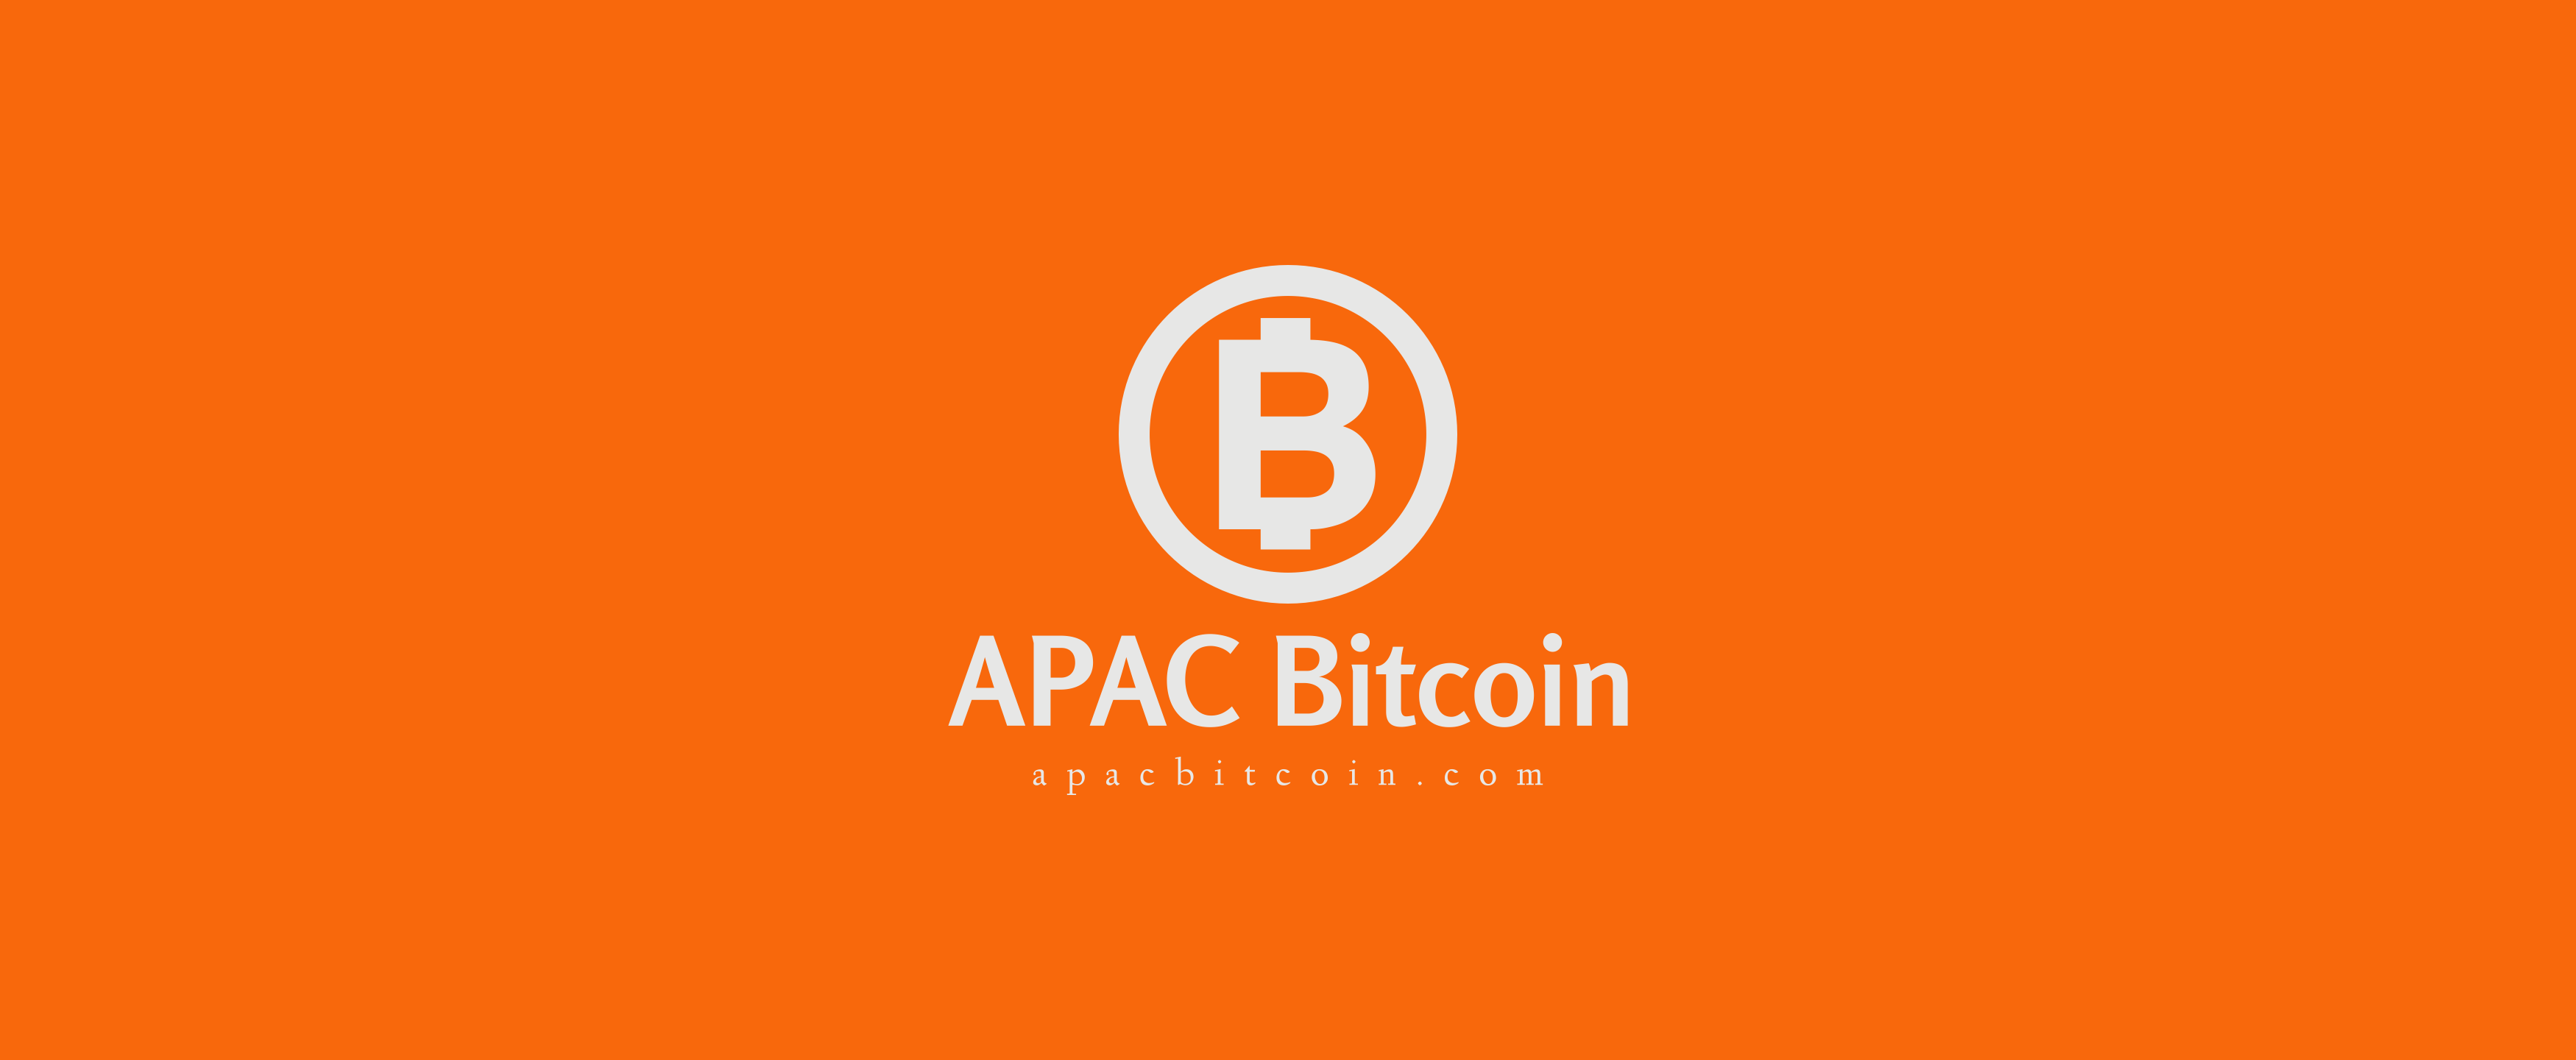 APAC Bitcoin